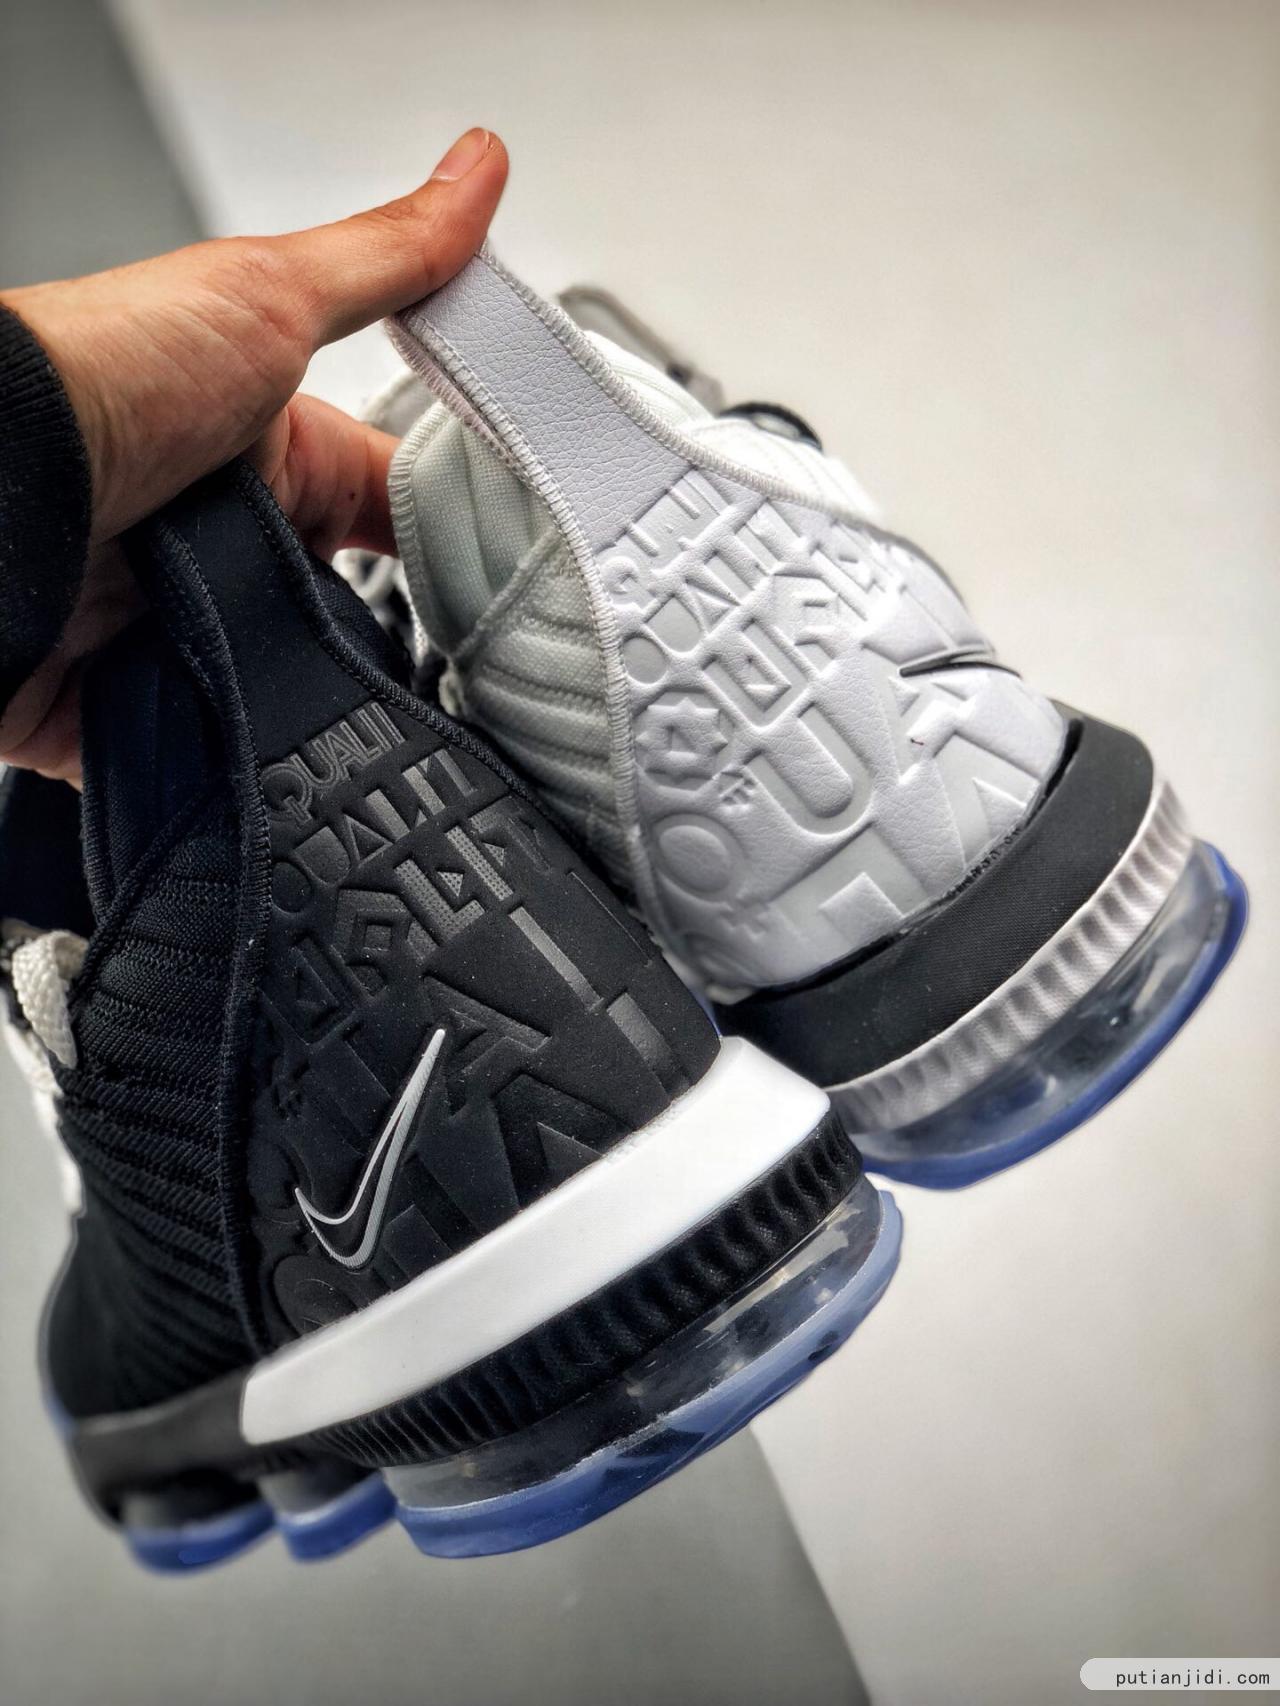 纯原最高工艺 新配色实战版本# Nike Lebron XVI “Equality” 勒布朗詹姆斯16代 黑白阴阳 #独家原厂